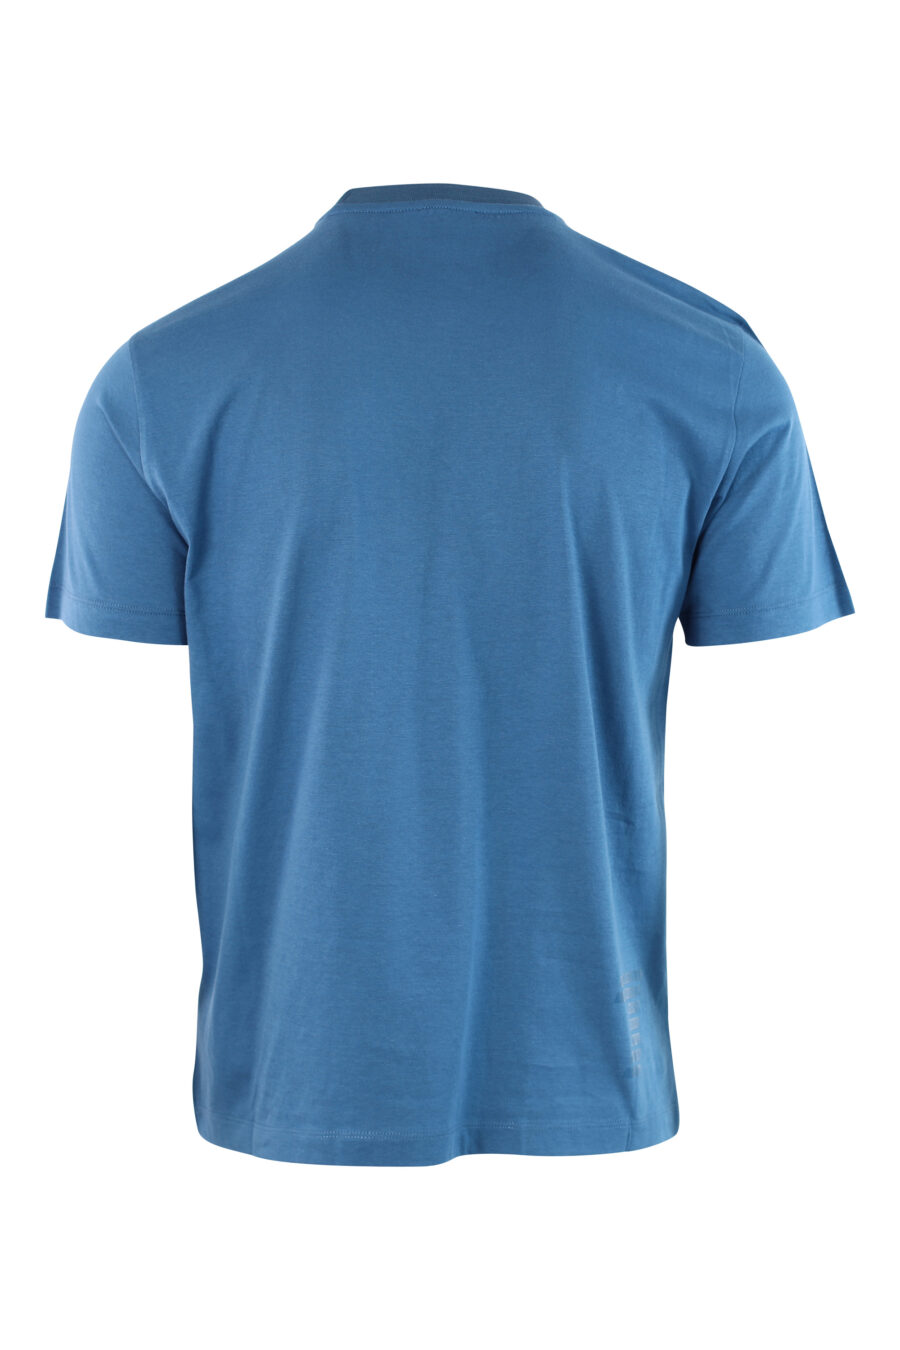 Camiseta azul claro con minilogo en placa - IMG 3798